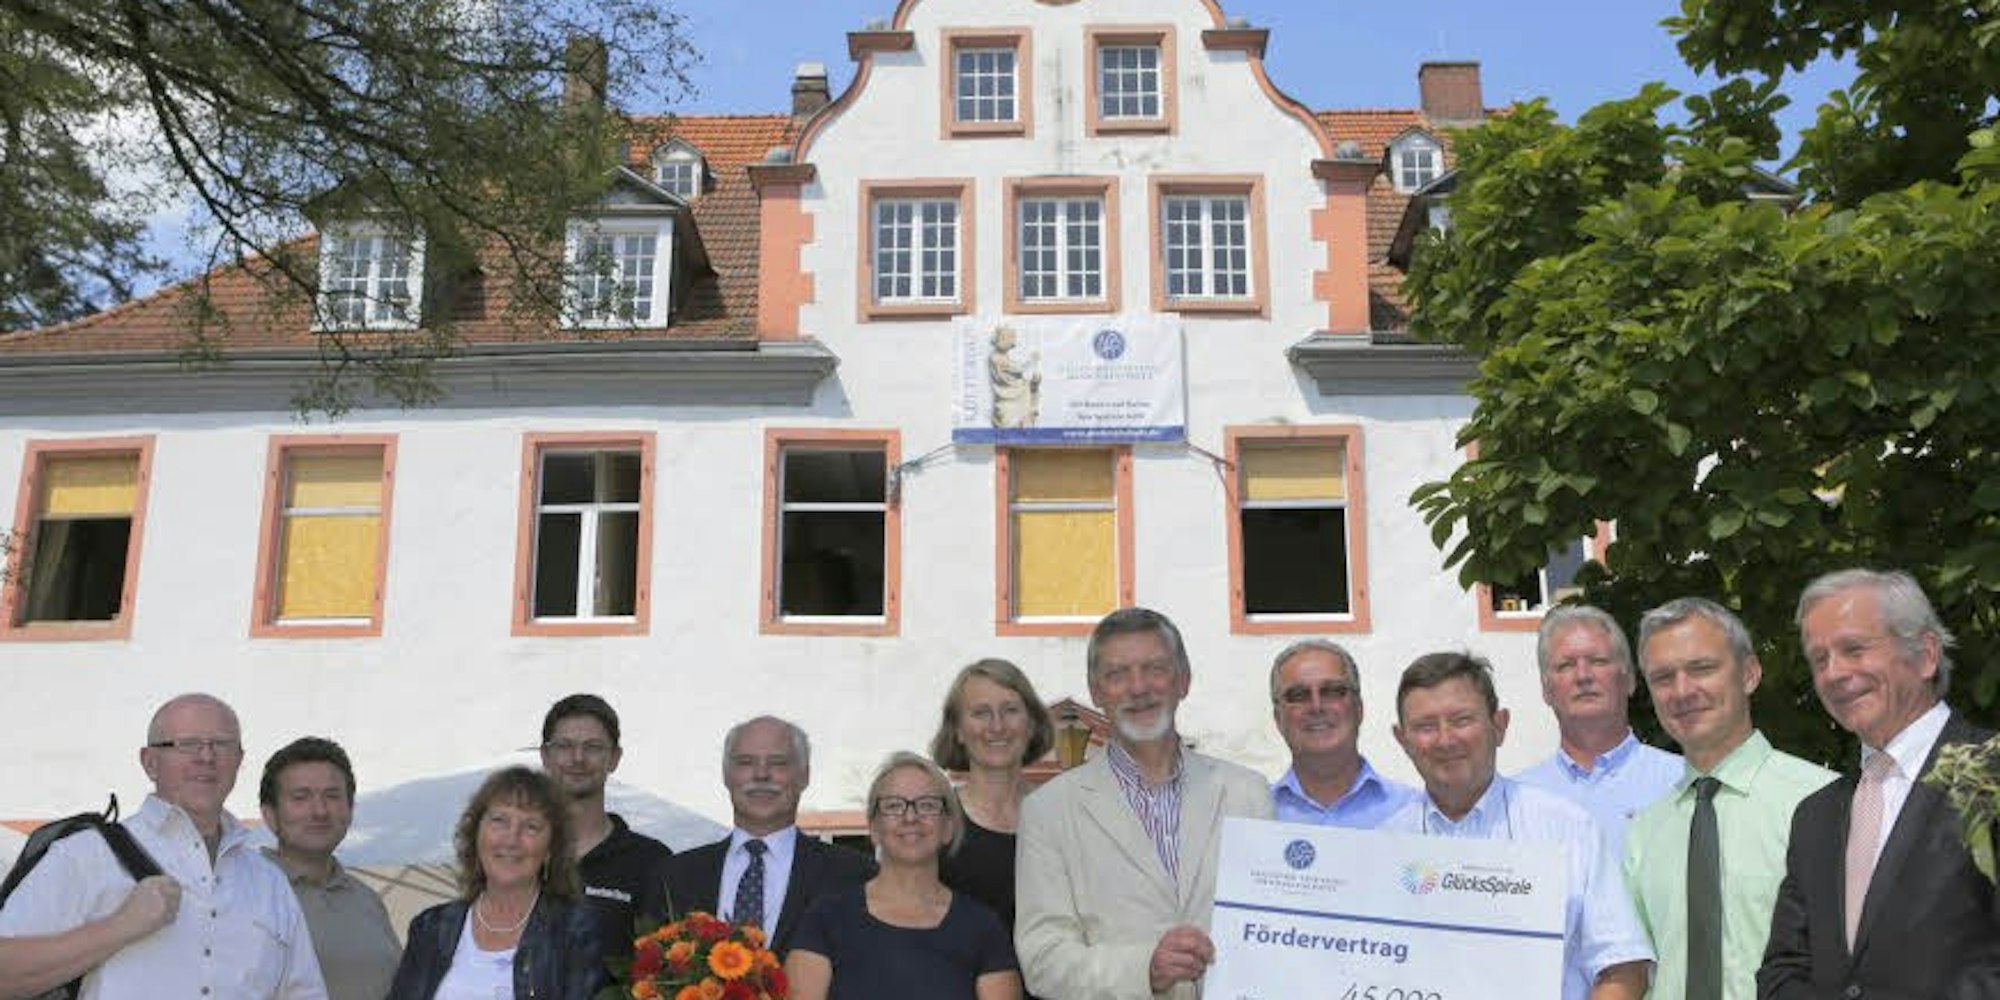 Die Sanierung der Fenster in Schloss Georghausen ist aufwendig. Nun überreichte die Deutsche Stiftung Denkmalschutz einen Zuschuss über 45 000 Euro.